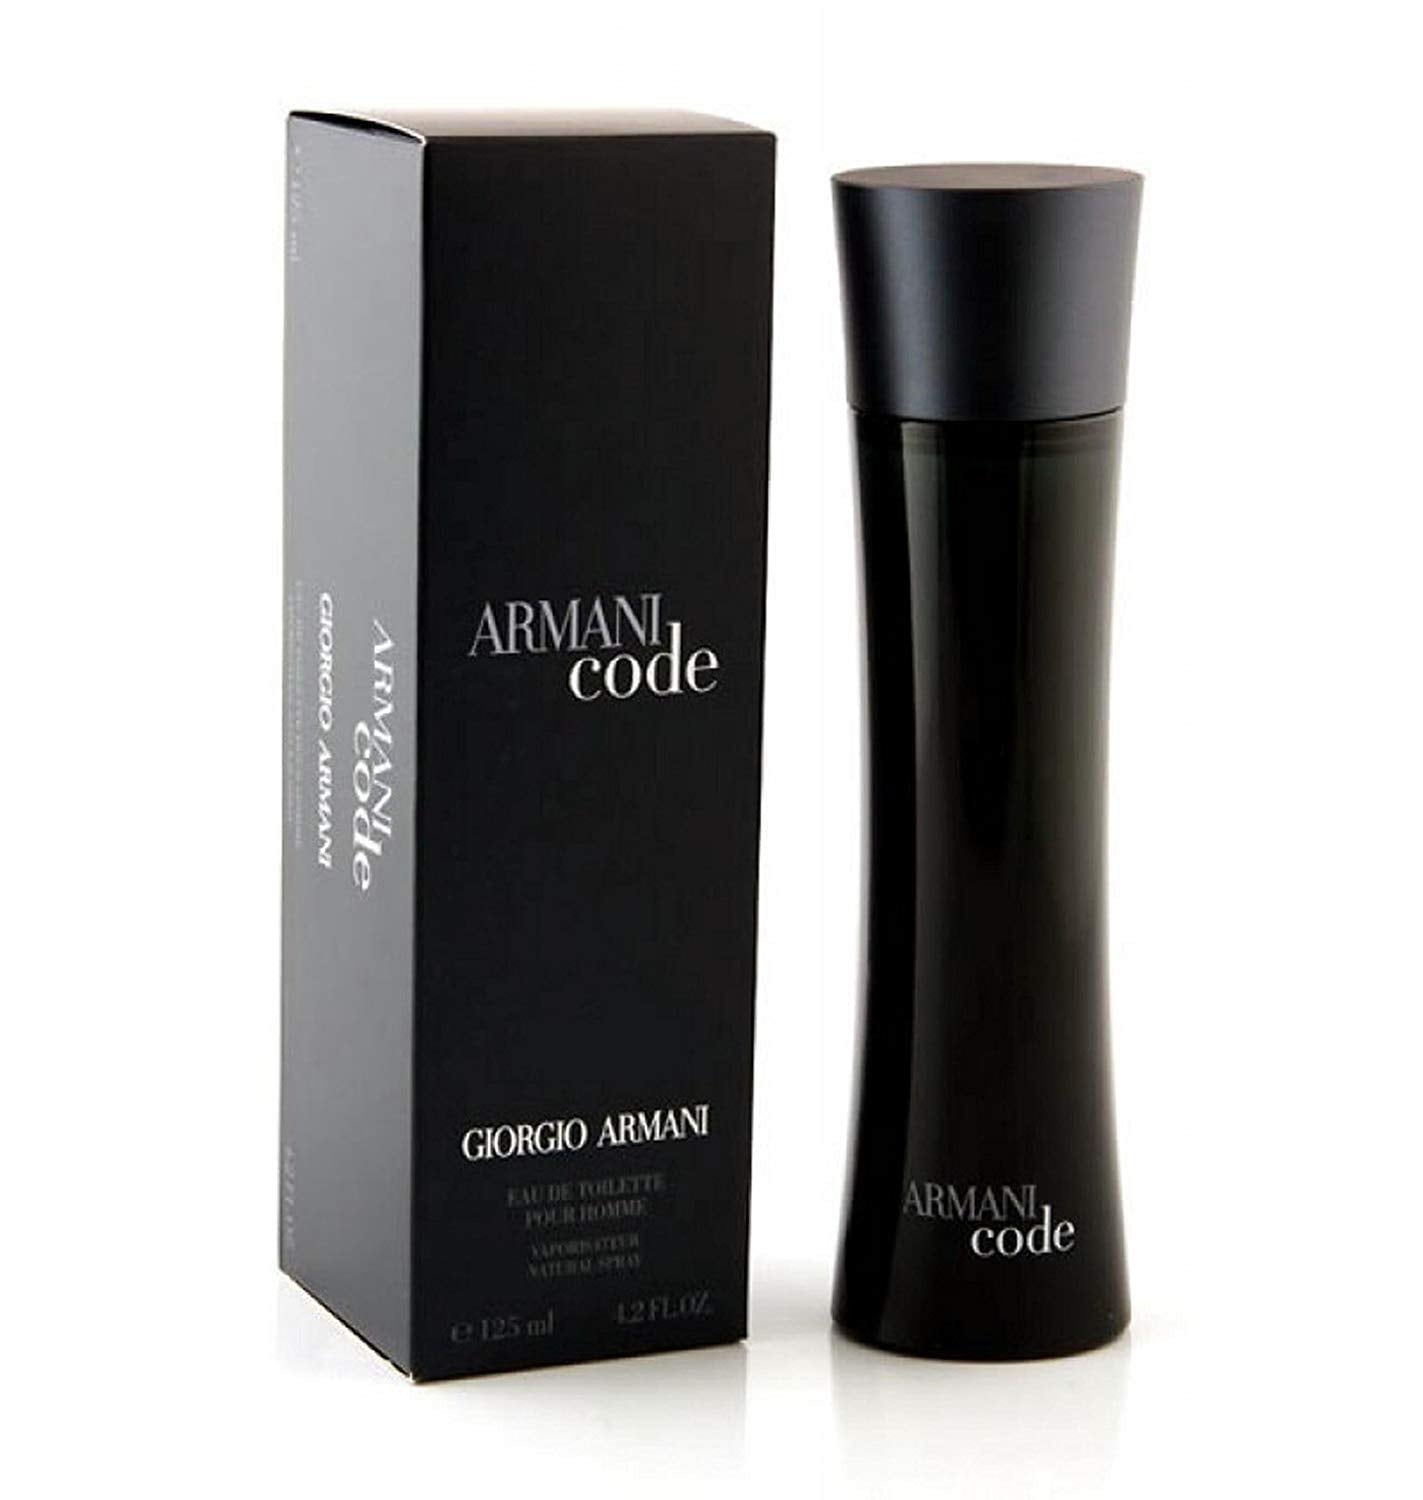 Armani Code by Giorgio Armani for Men EDT Spray